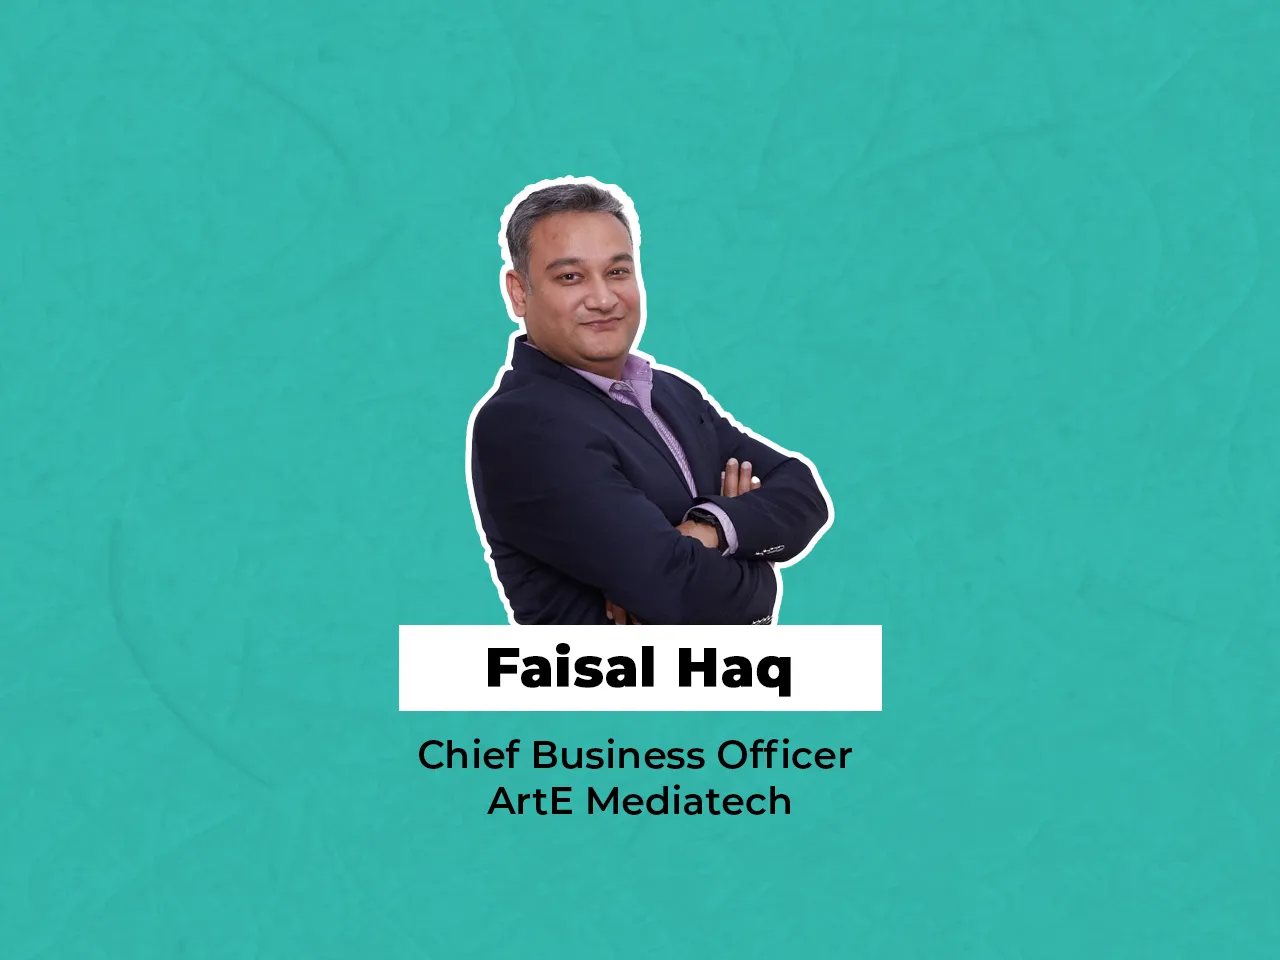 Faisal Haq joins ArtE Mediatech as the Chief Business Officer